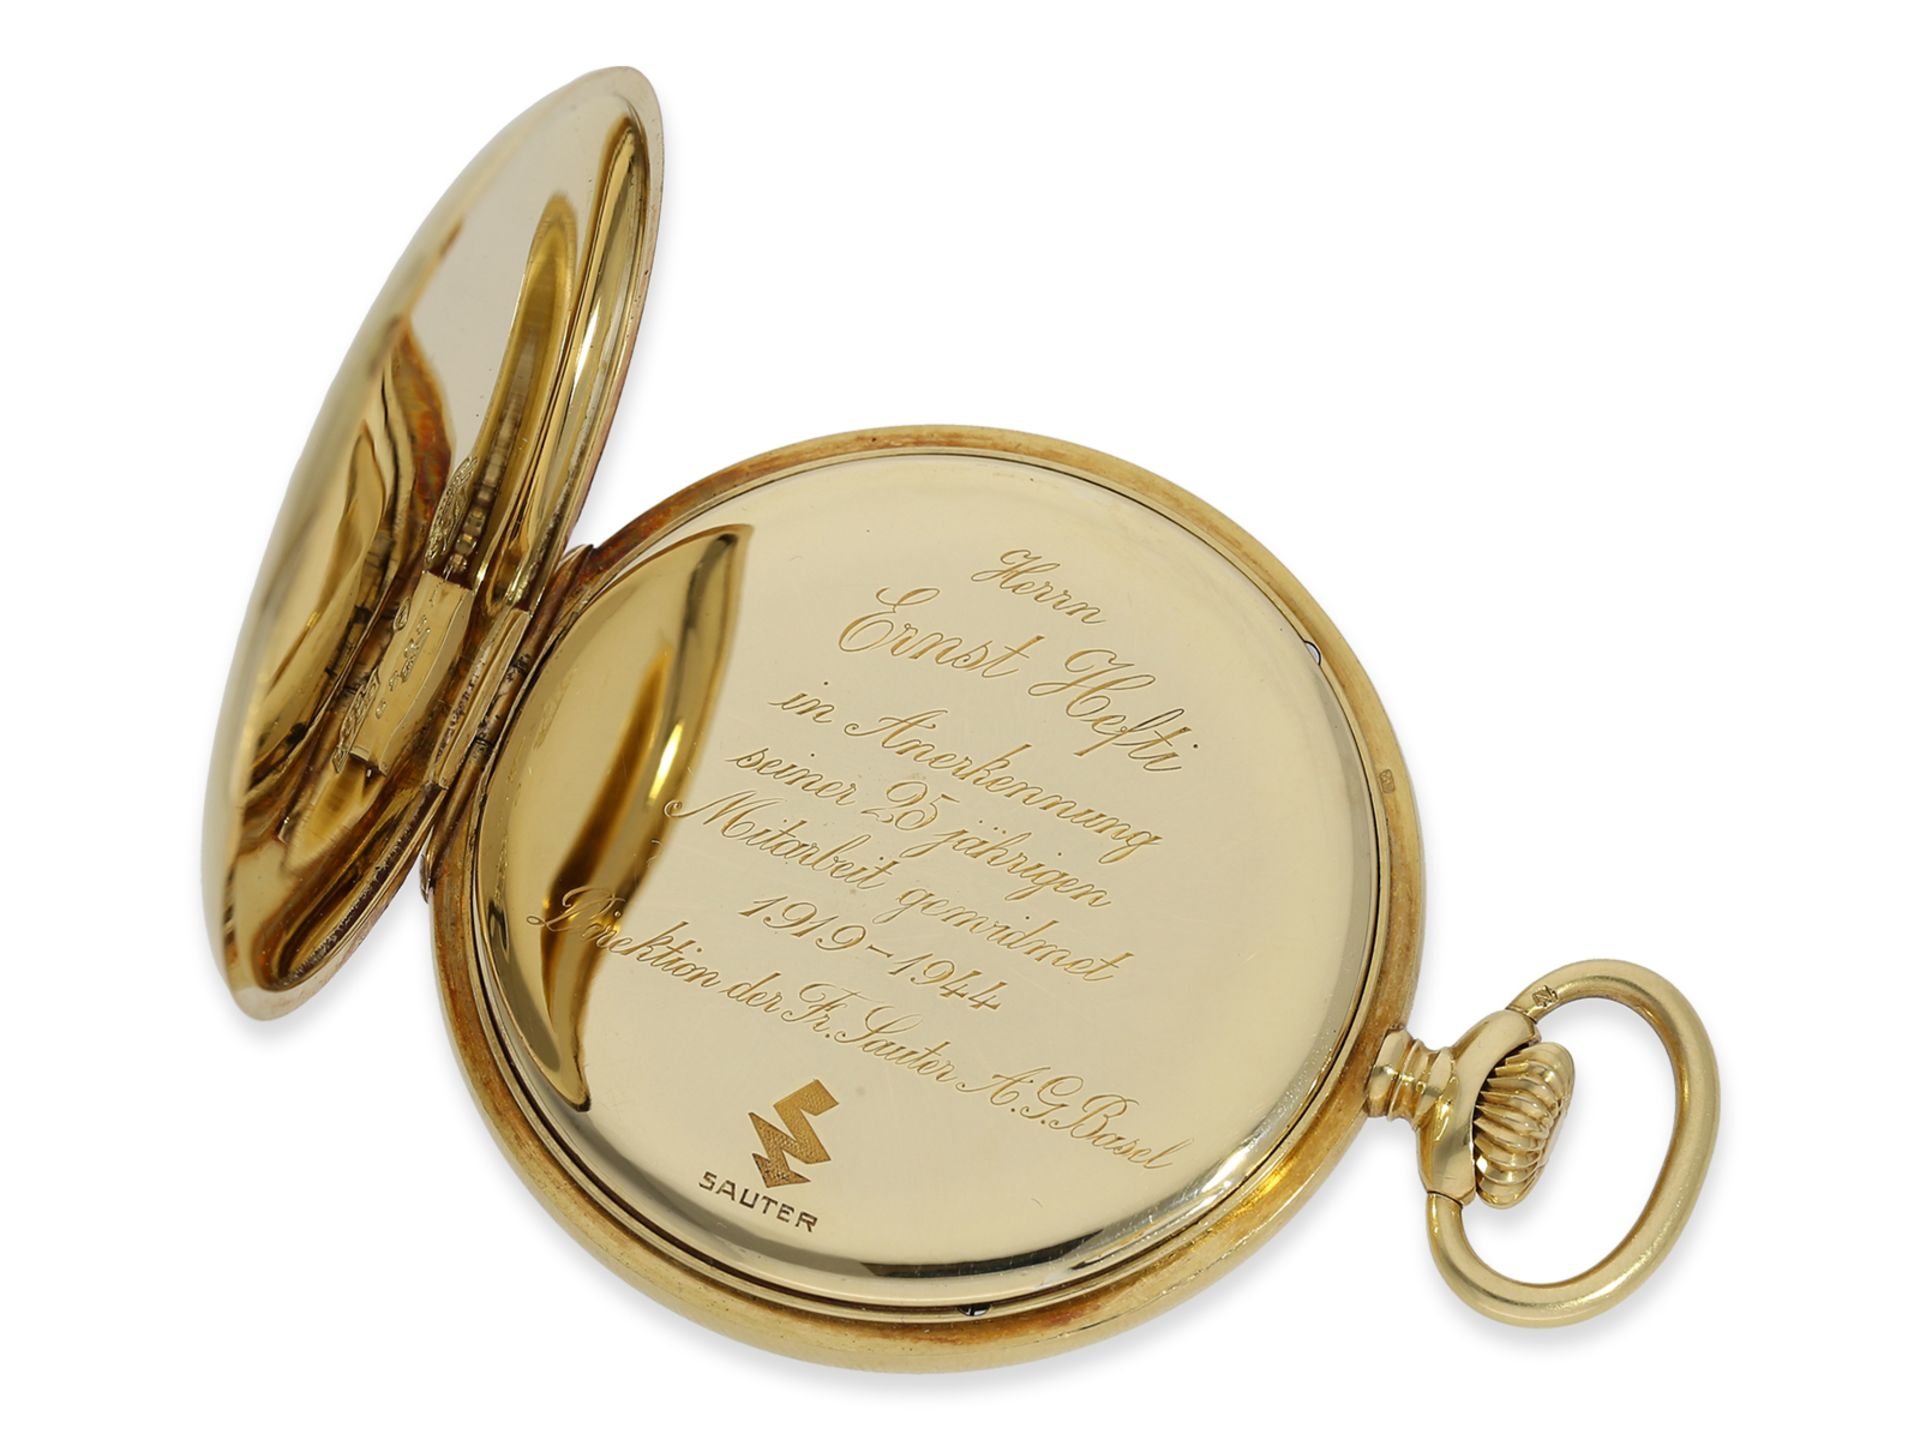 Taschenuhr: hochwertige 18K Präzisionstaschenuhr, Ulysse Nardin No. 87633, ca.1908 - Bild 3 aus 6